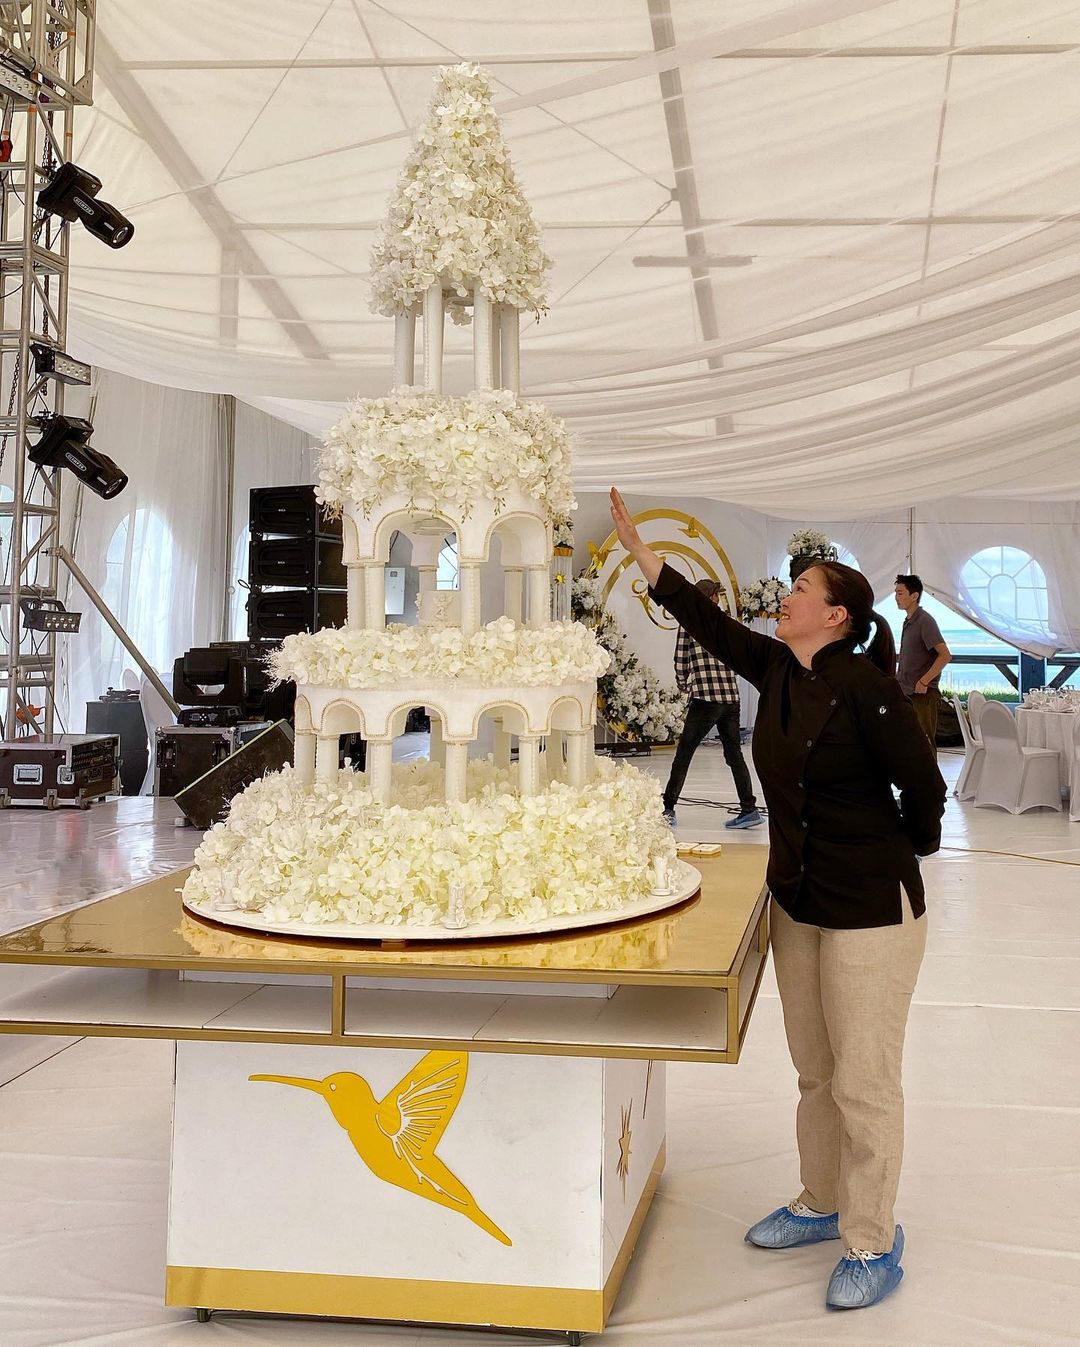 "Такие торты оцениваются по сложности работы, а не по весу", - в Якутске кондитеры стали создавать шоу-торты